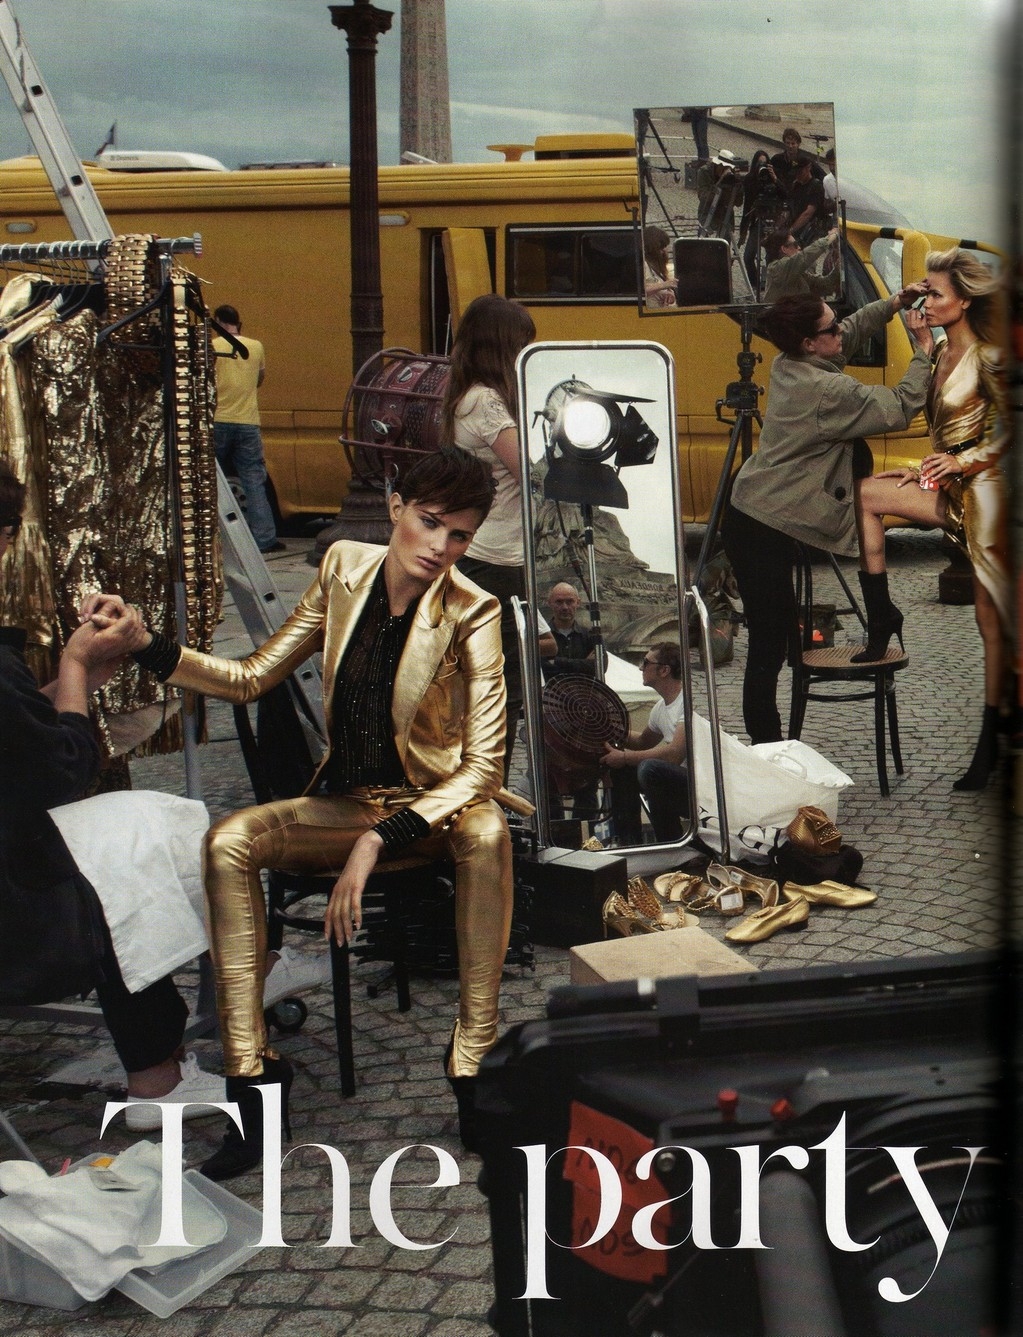 The Fashion Partizan.: VOGUE PARIS: THE PARTY SHOOT